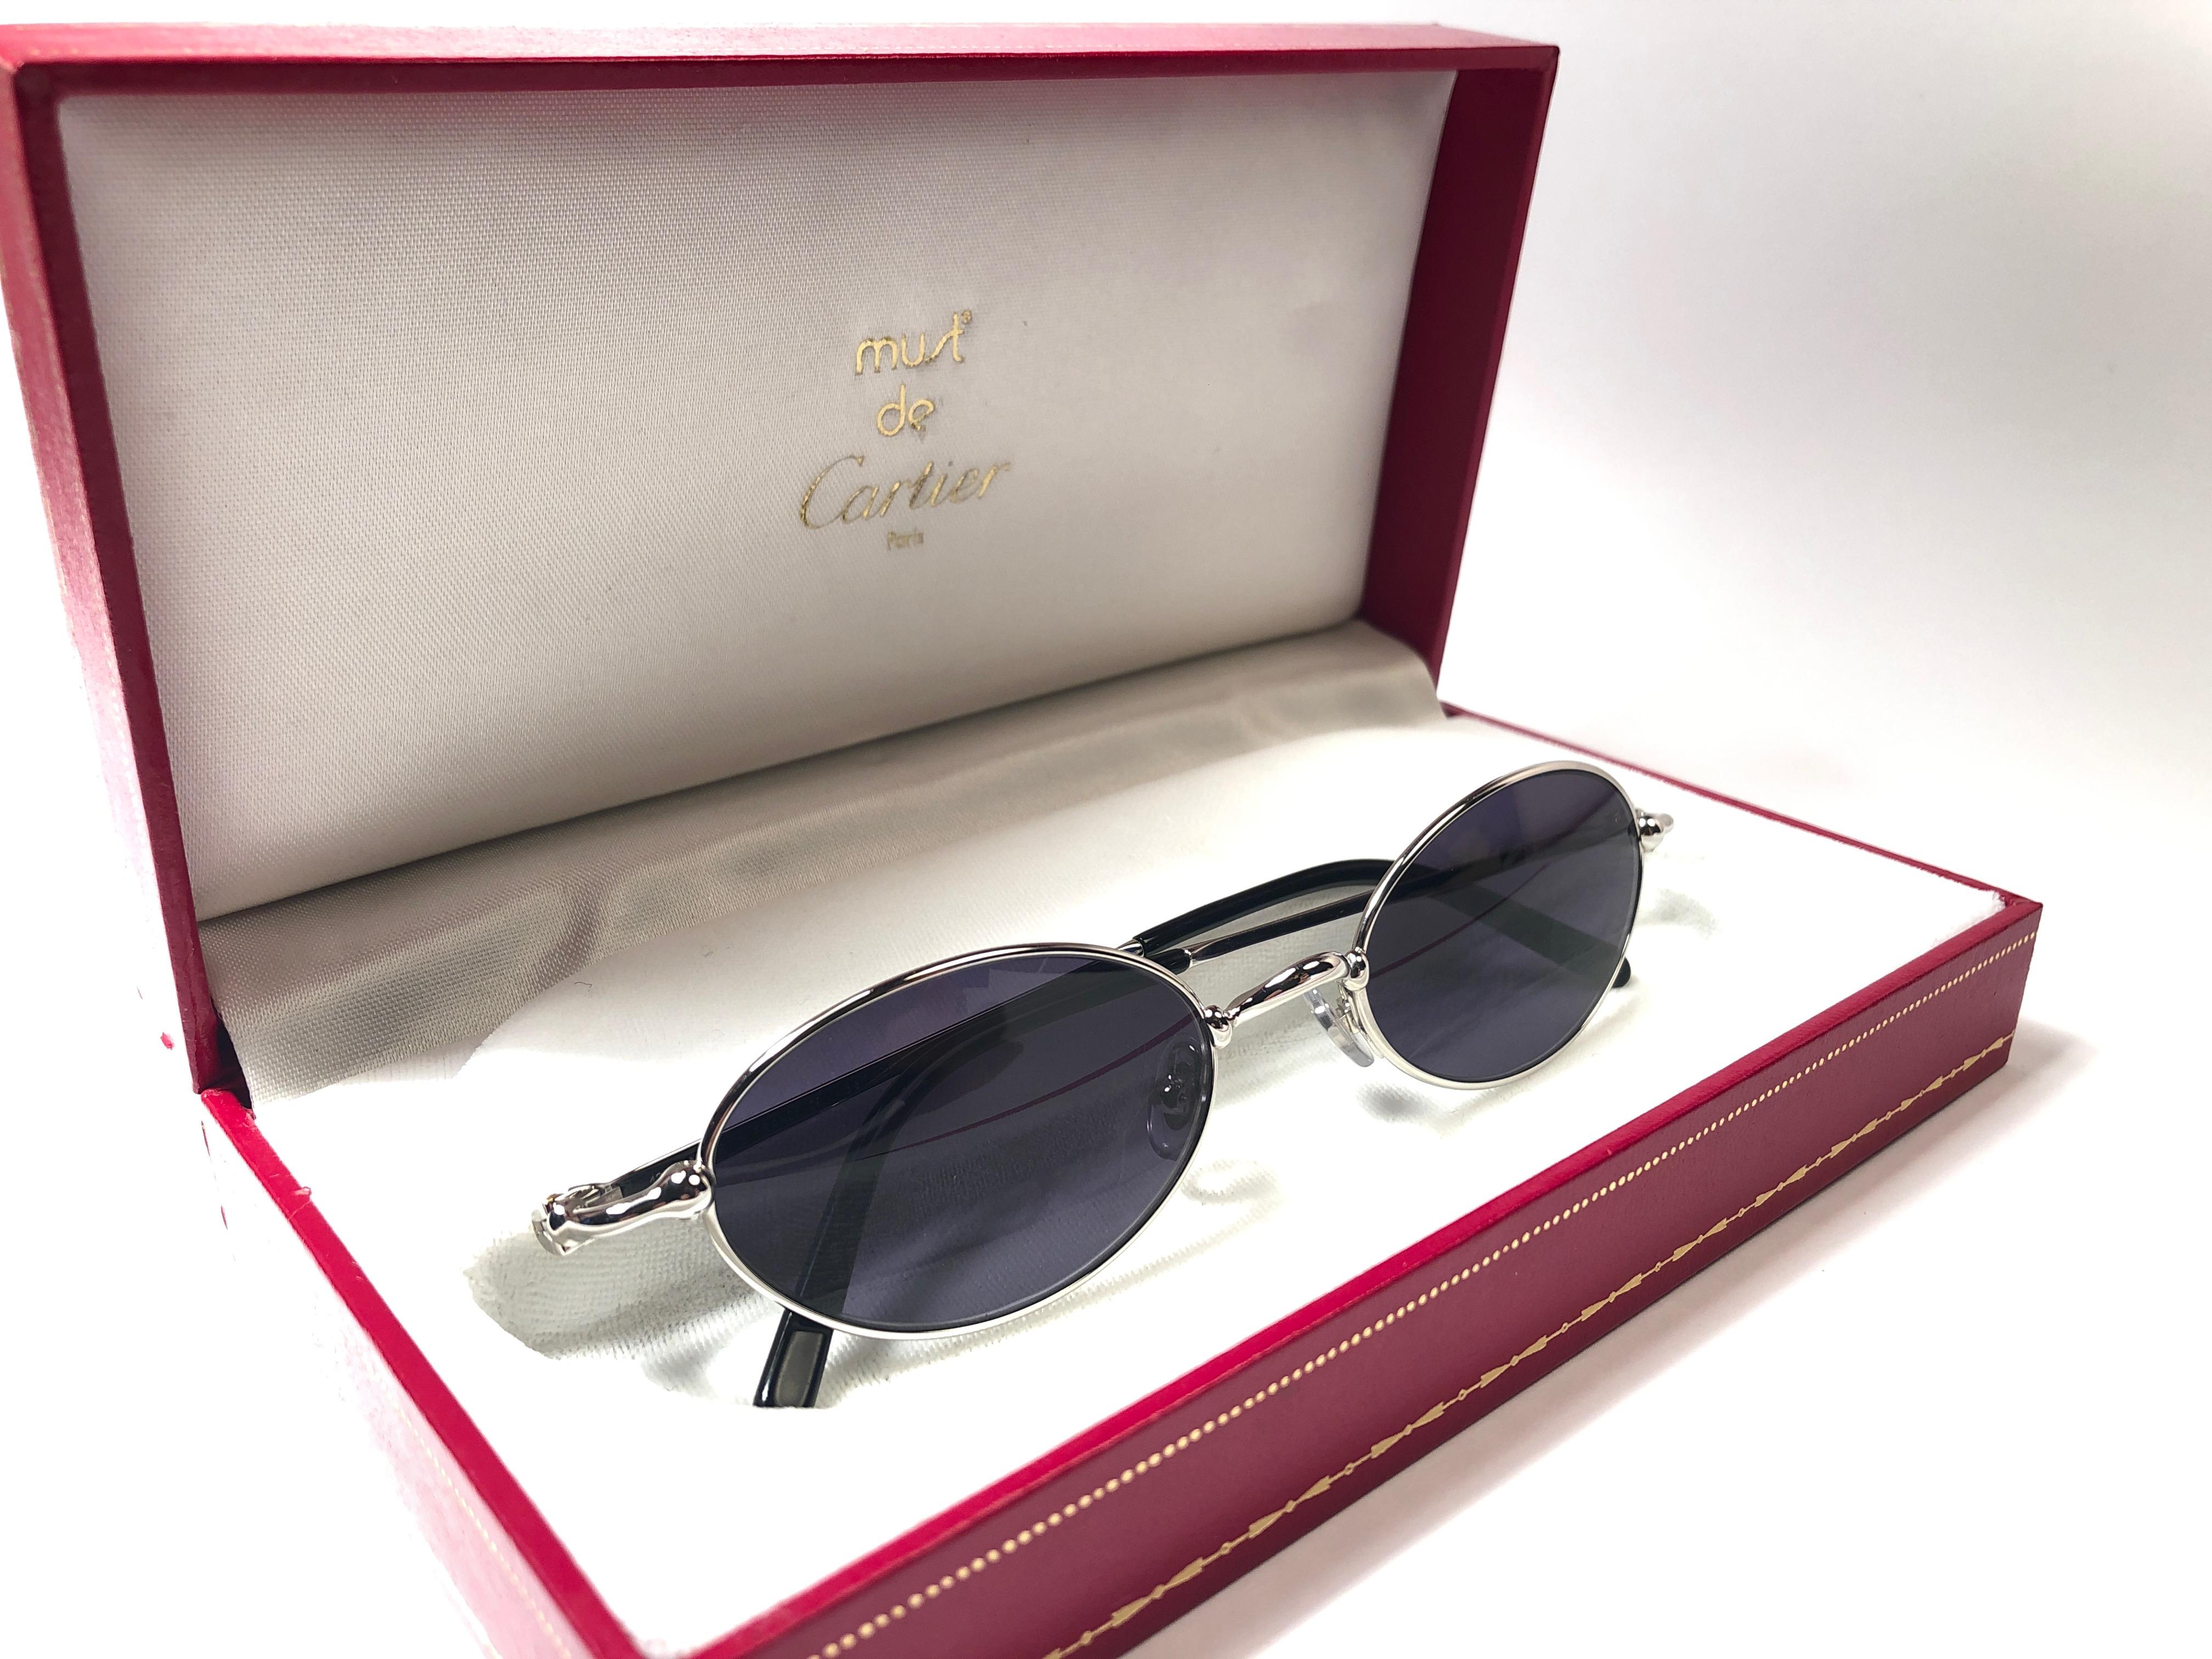 Neu 1990 Cartier Filao versilberte Sonnenbrille mit blauen (uv-Schutz) Gläsern. Alle Markenzeichen. Cartier-Silberzeichen auf den Ohrmuscheln. 
Sie sind wie ein Paar Juwelen auf der Nase. Bitte beachten Sie, dass dieses Paar fast 30 Jahre alt ist